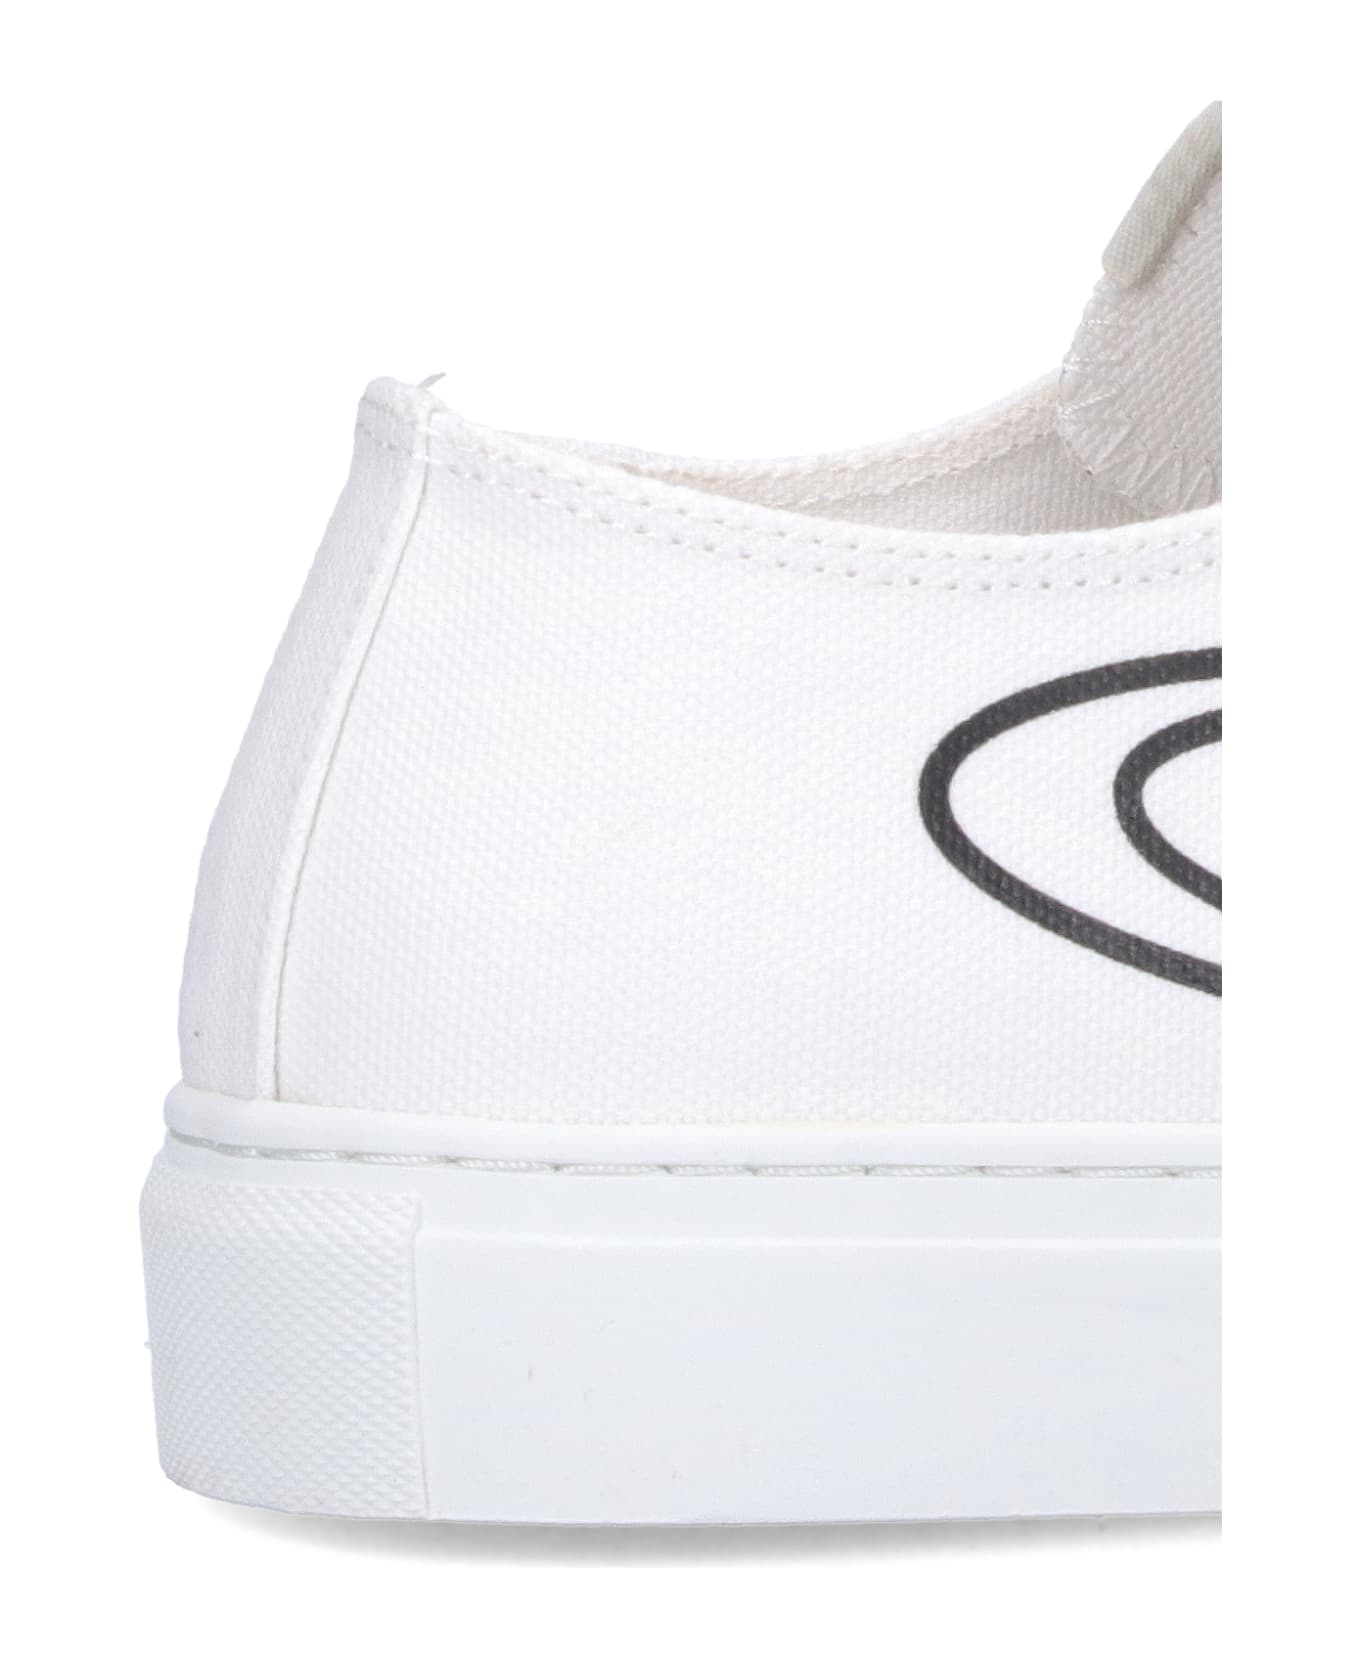 Vivienne Westwood "plimsoll Low Top 2.0" Sneakers - White スニーカー